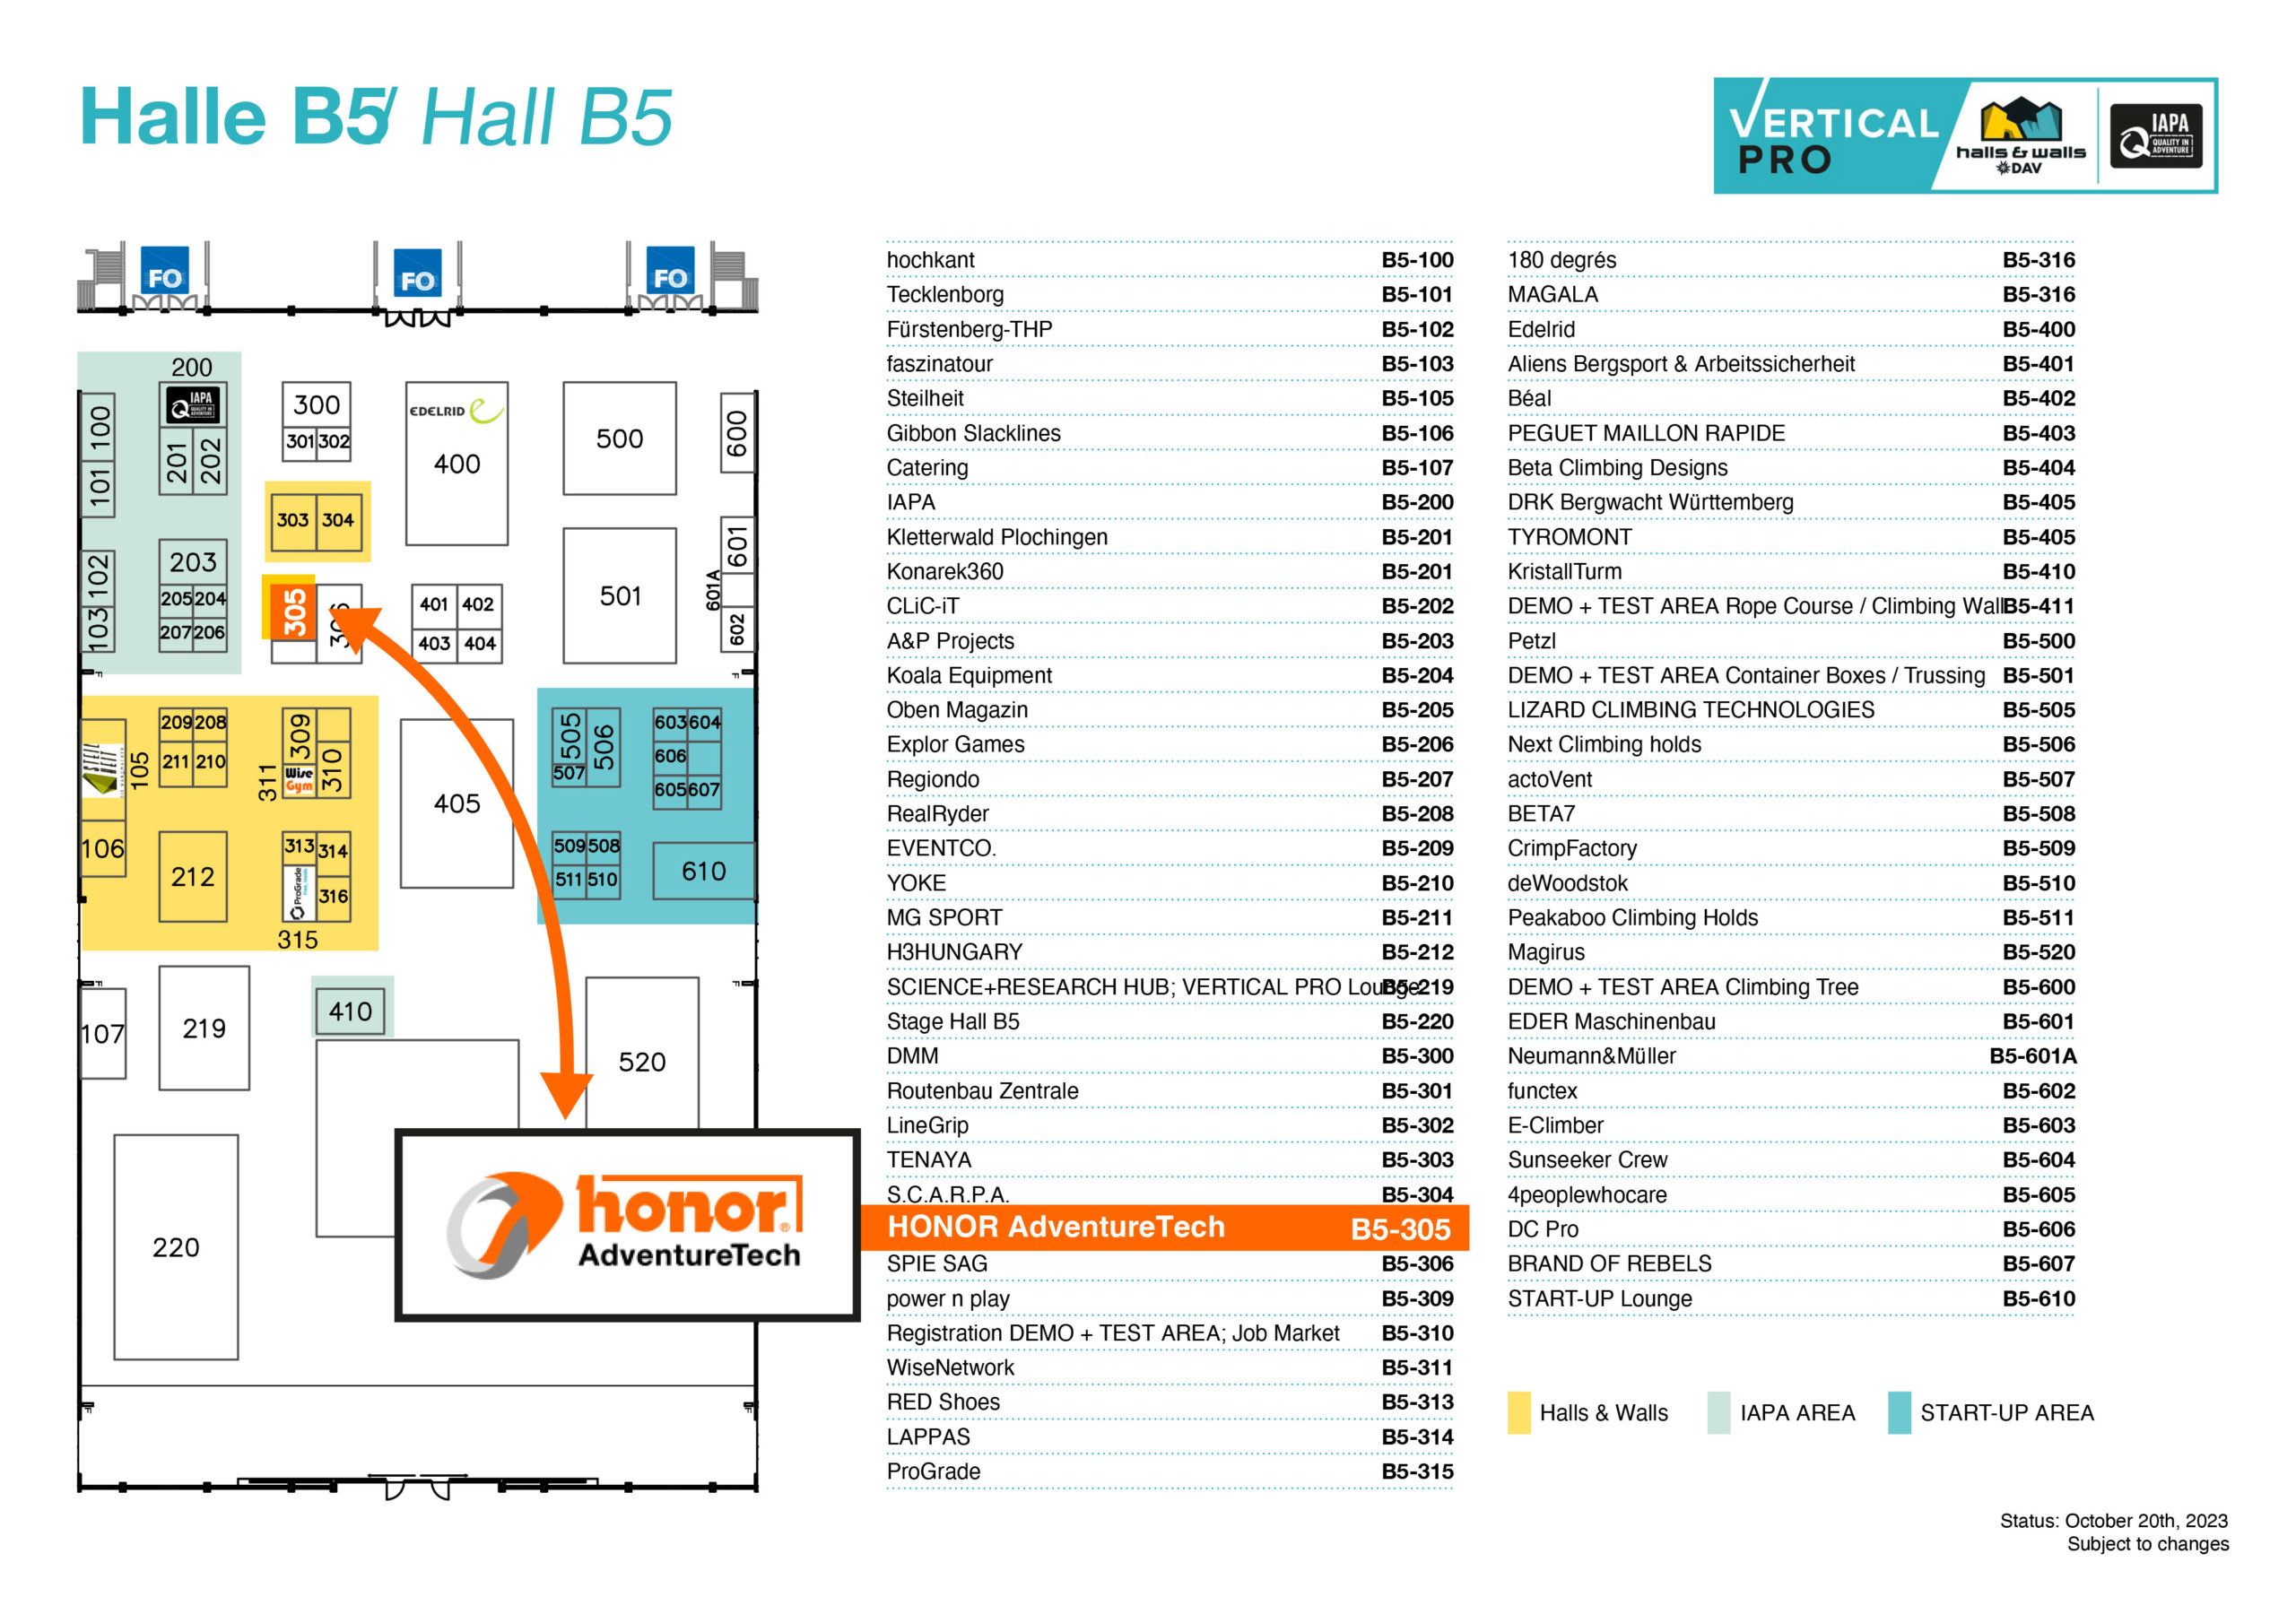 Halls&Walls-Vertical-Pro---HONOR-AdventureTech-index-of-exhibitors-hall-overview